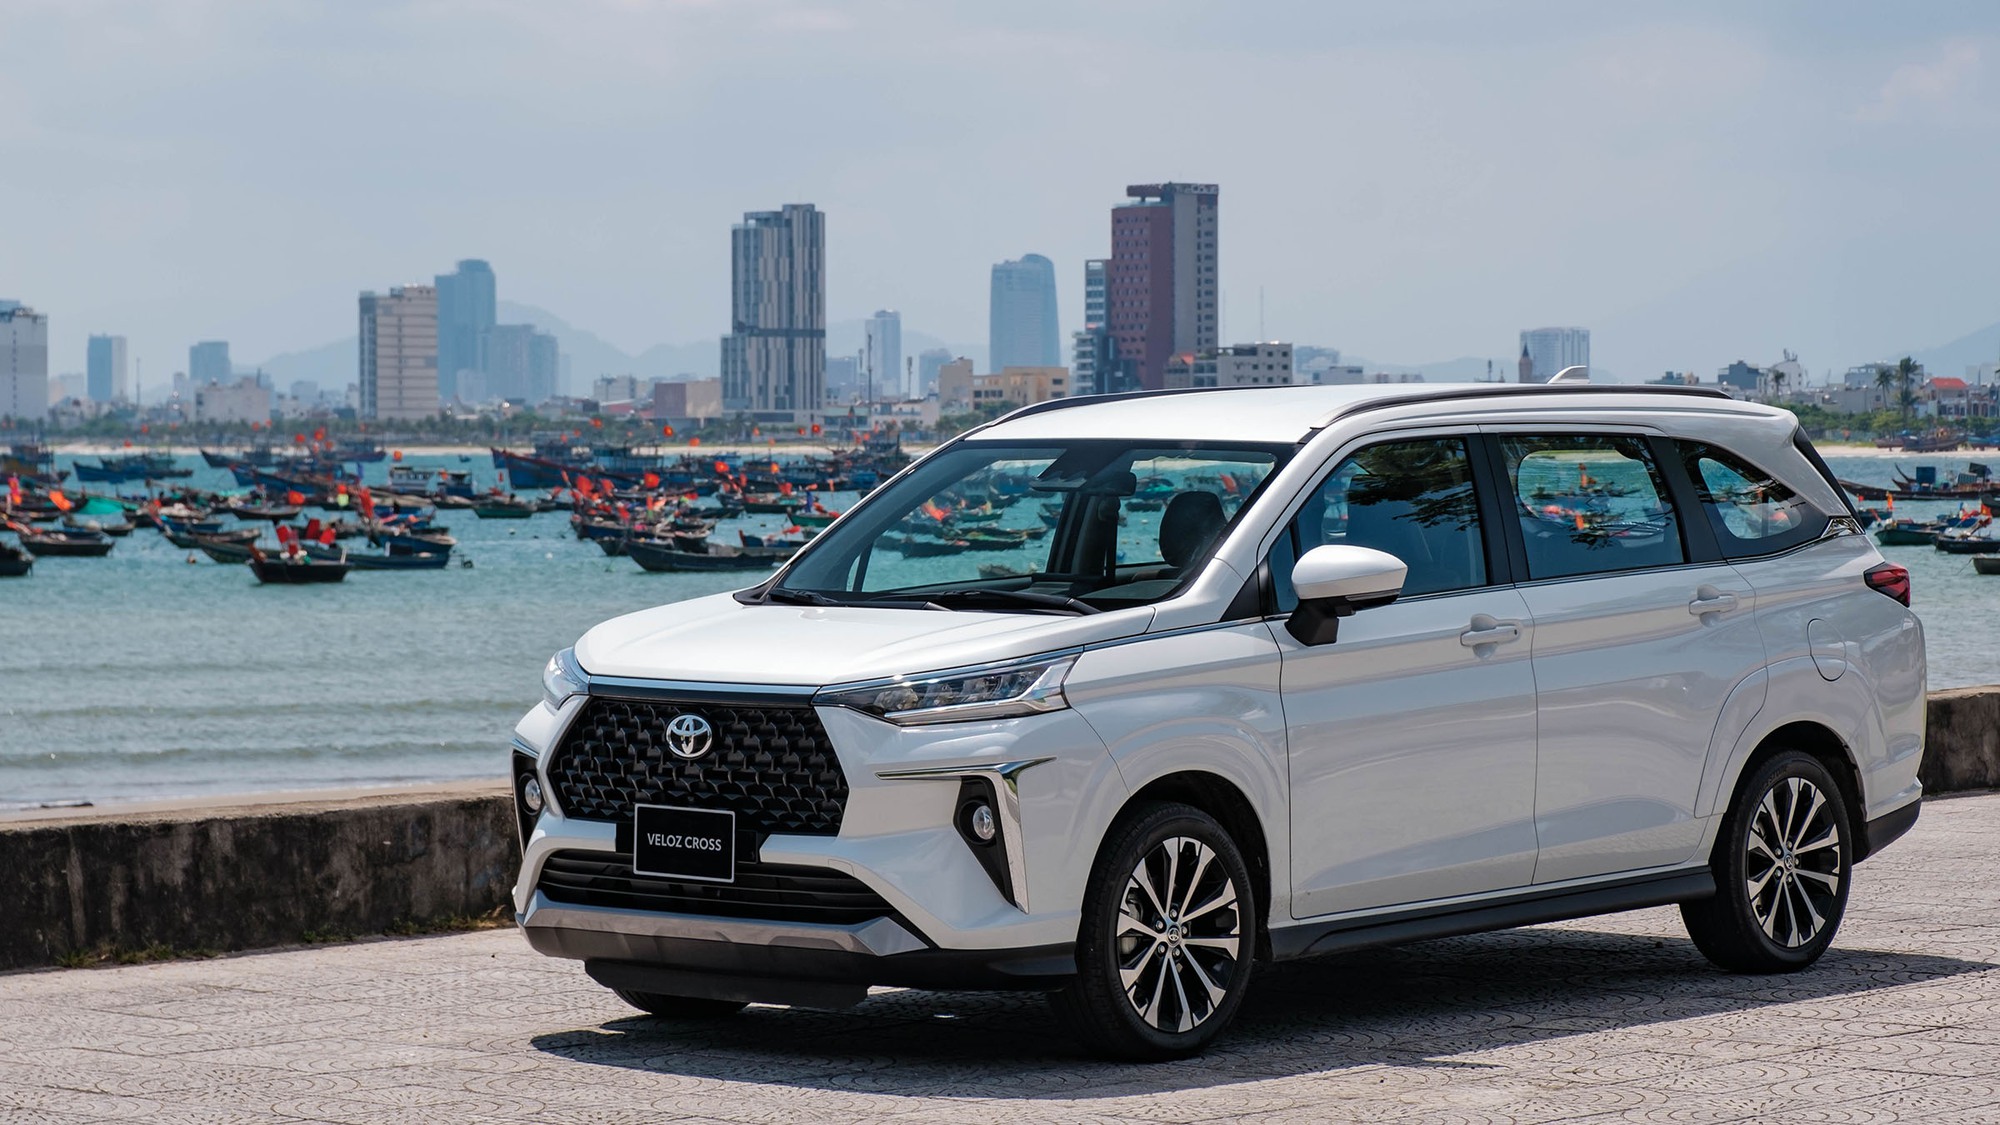 Bảng giá xe Toyota tháng 3: Veloz Cross được ưu đãi hơn 30 triệu đồng - Ảnh 1.